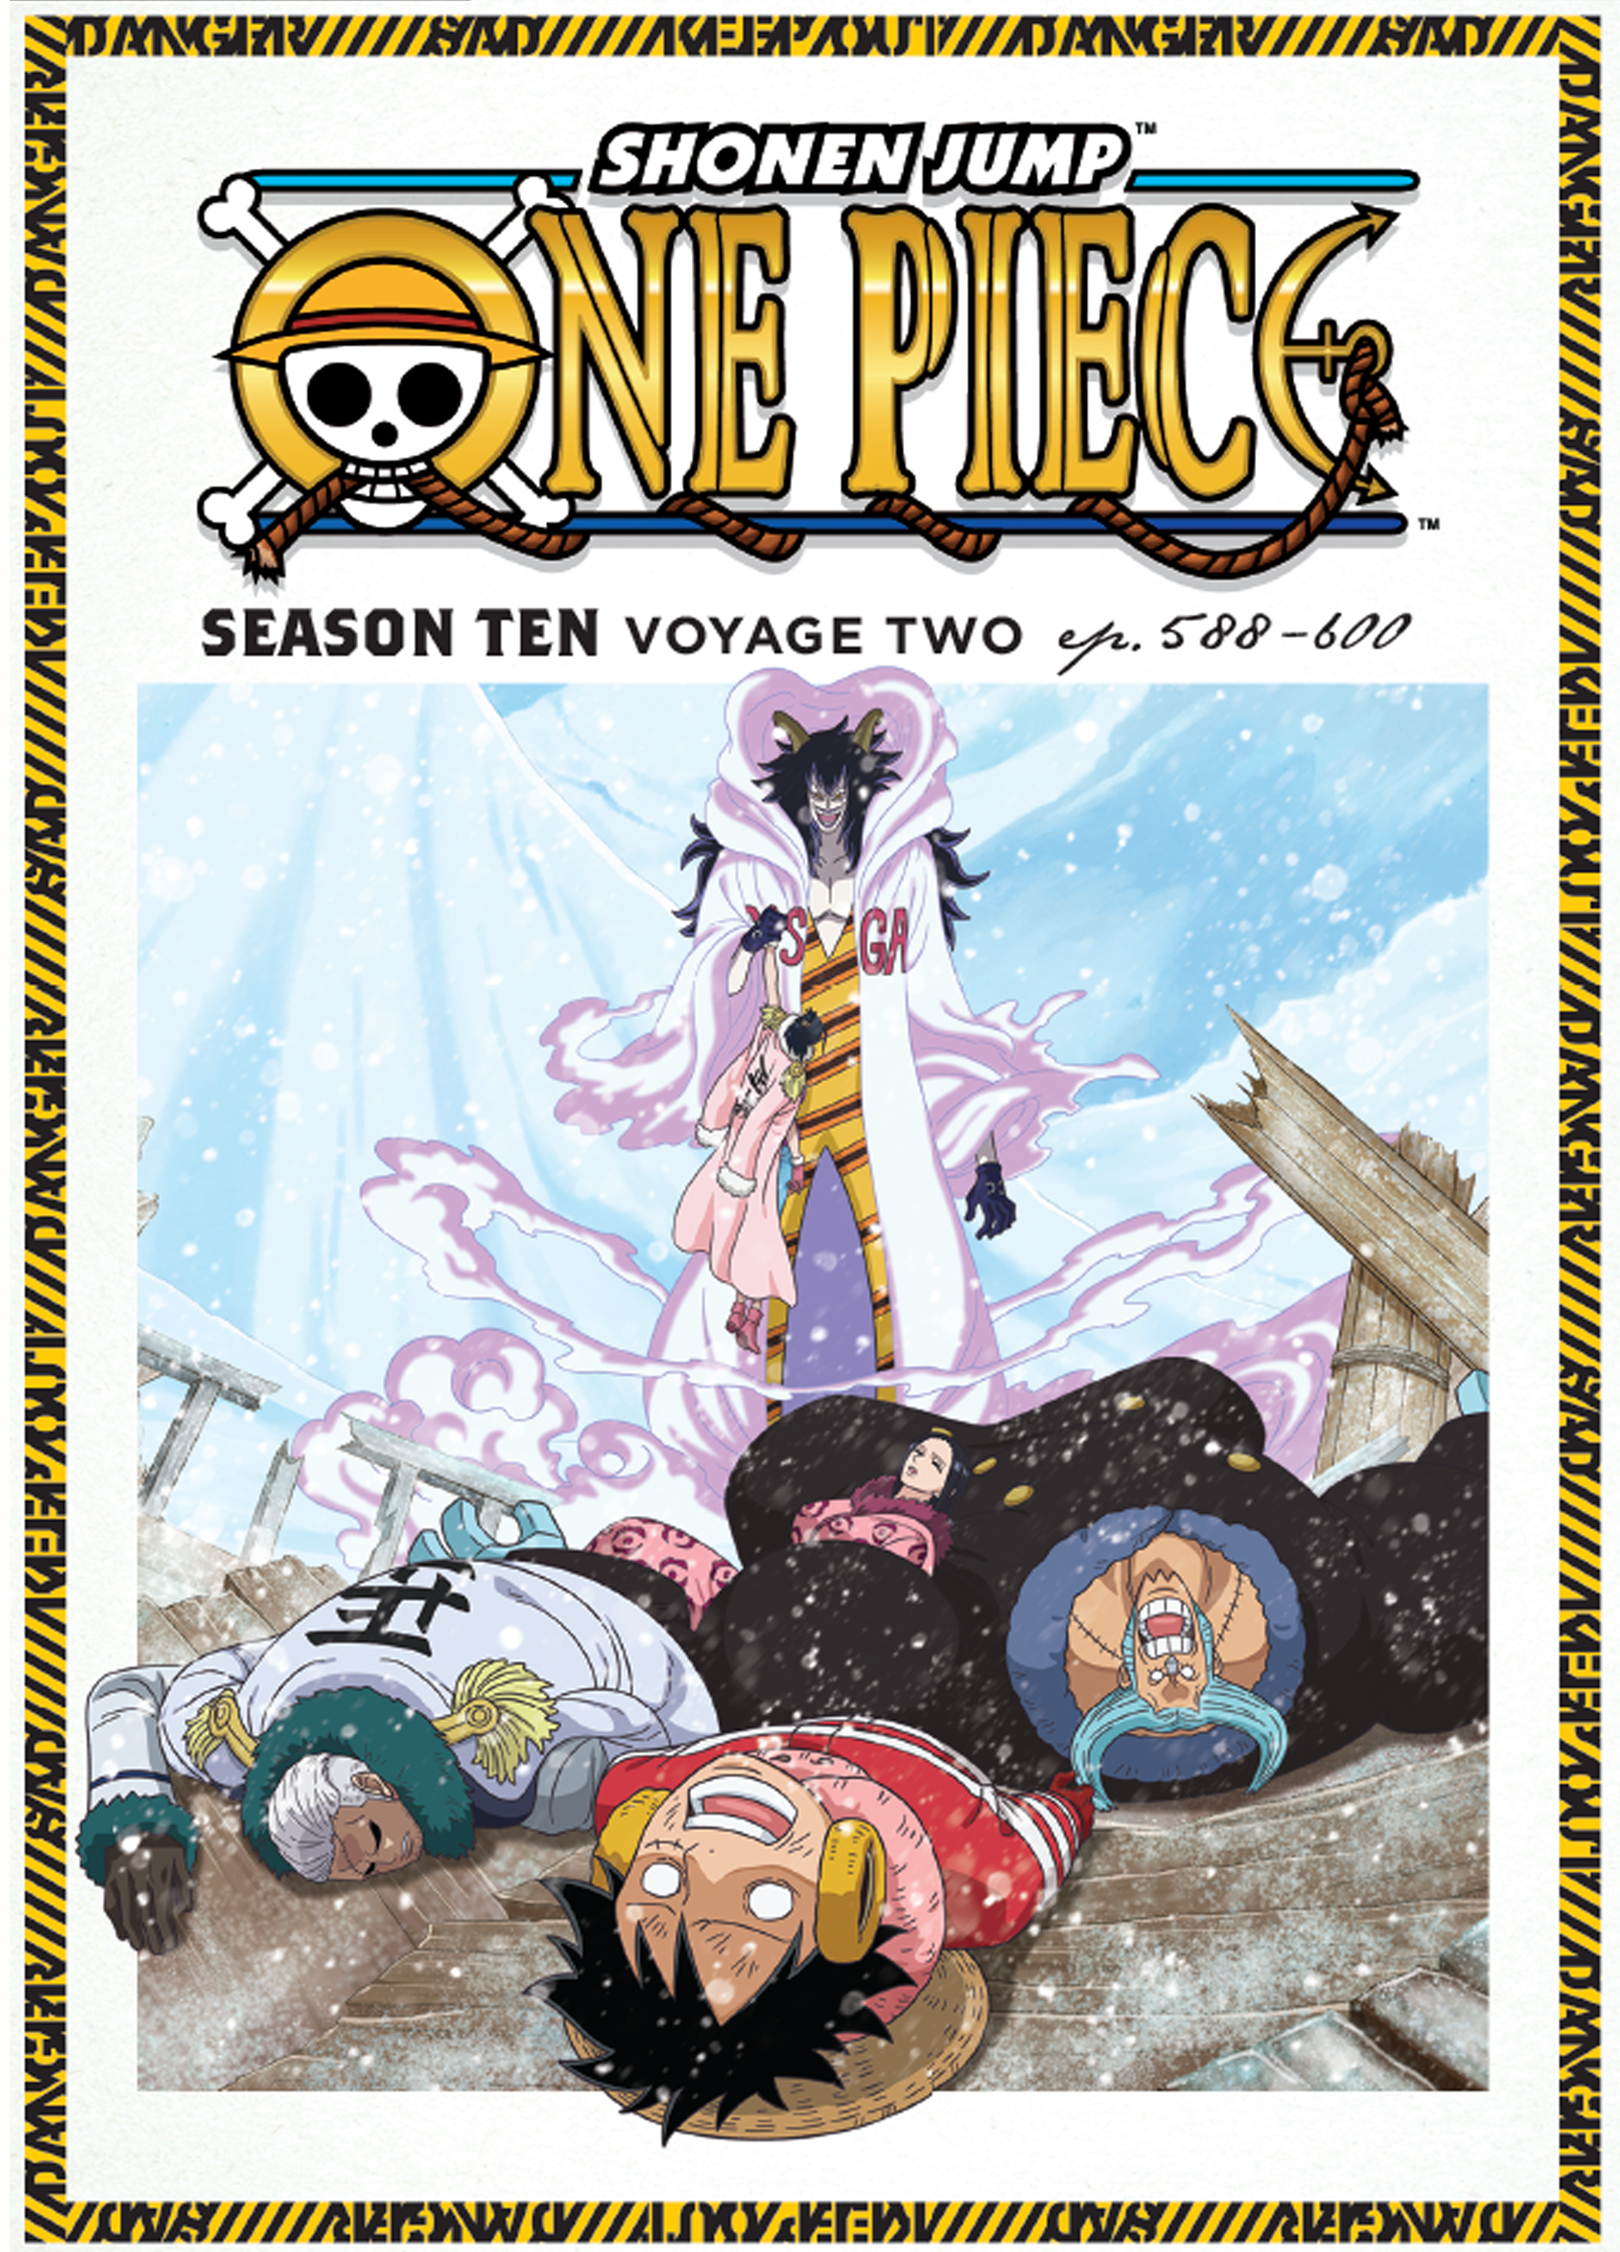 One Piece Season Ten Voyage Two Dvd Best Buy